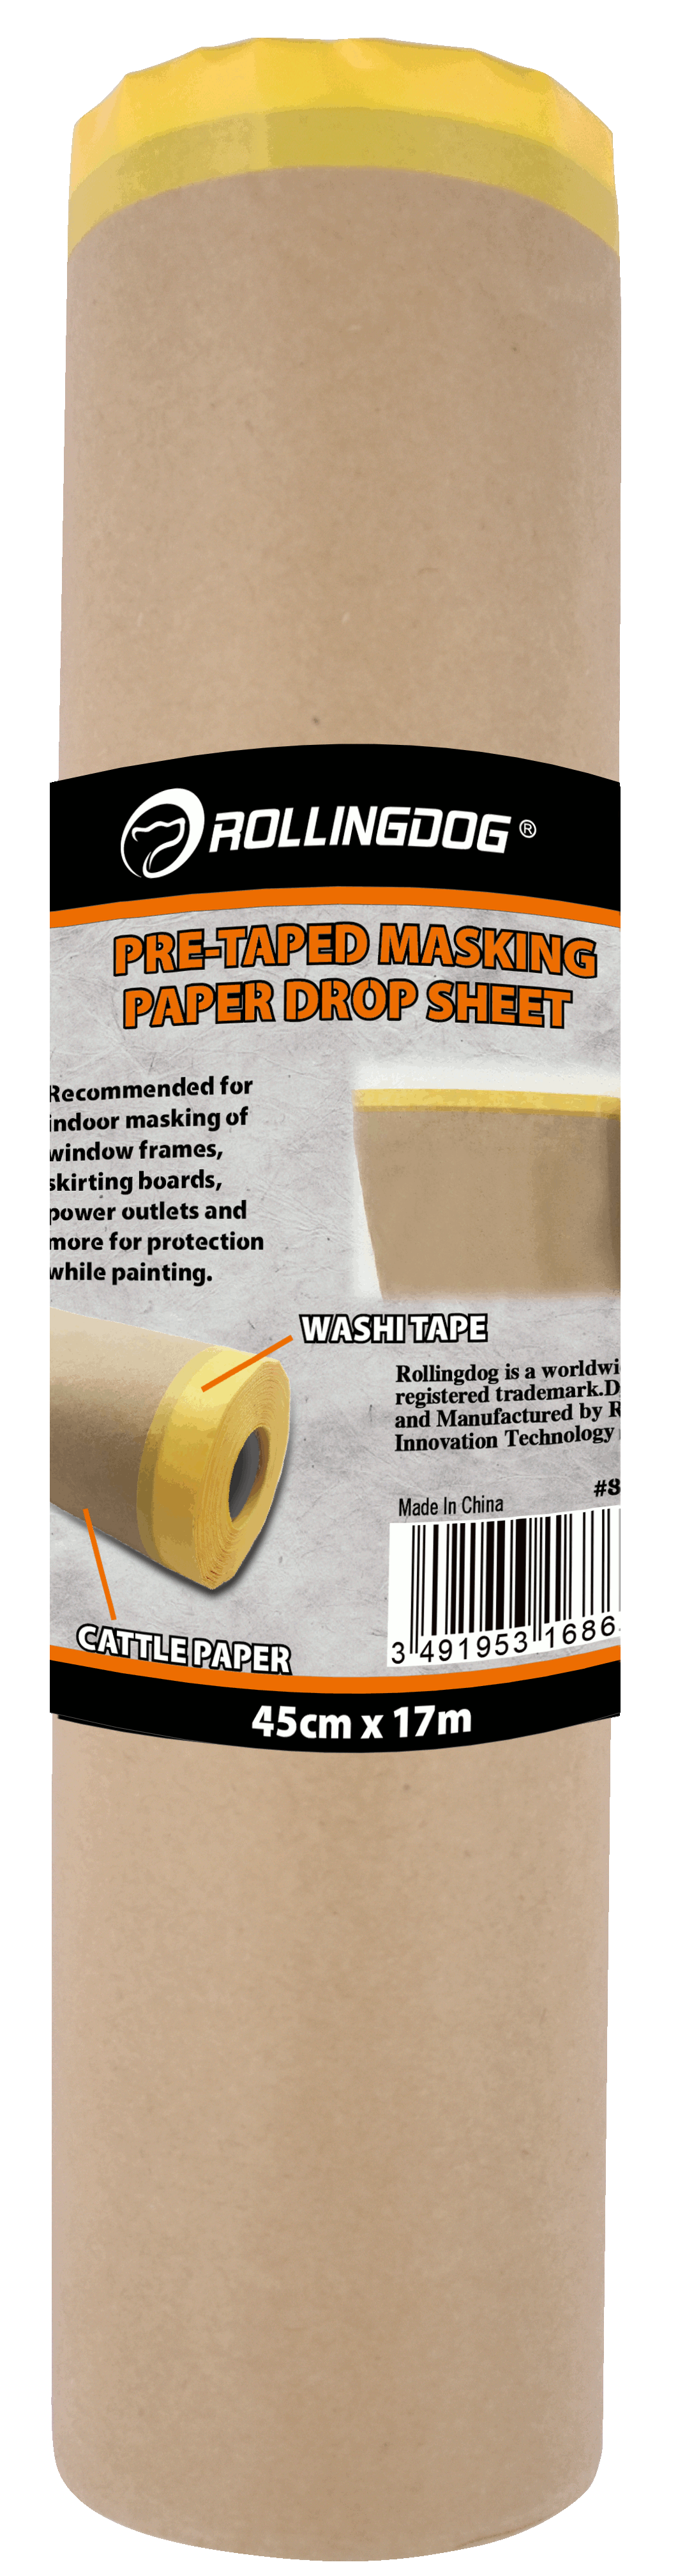 PRE-Taped Masking Paper Drop Sheet                                                                                                                                                                      